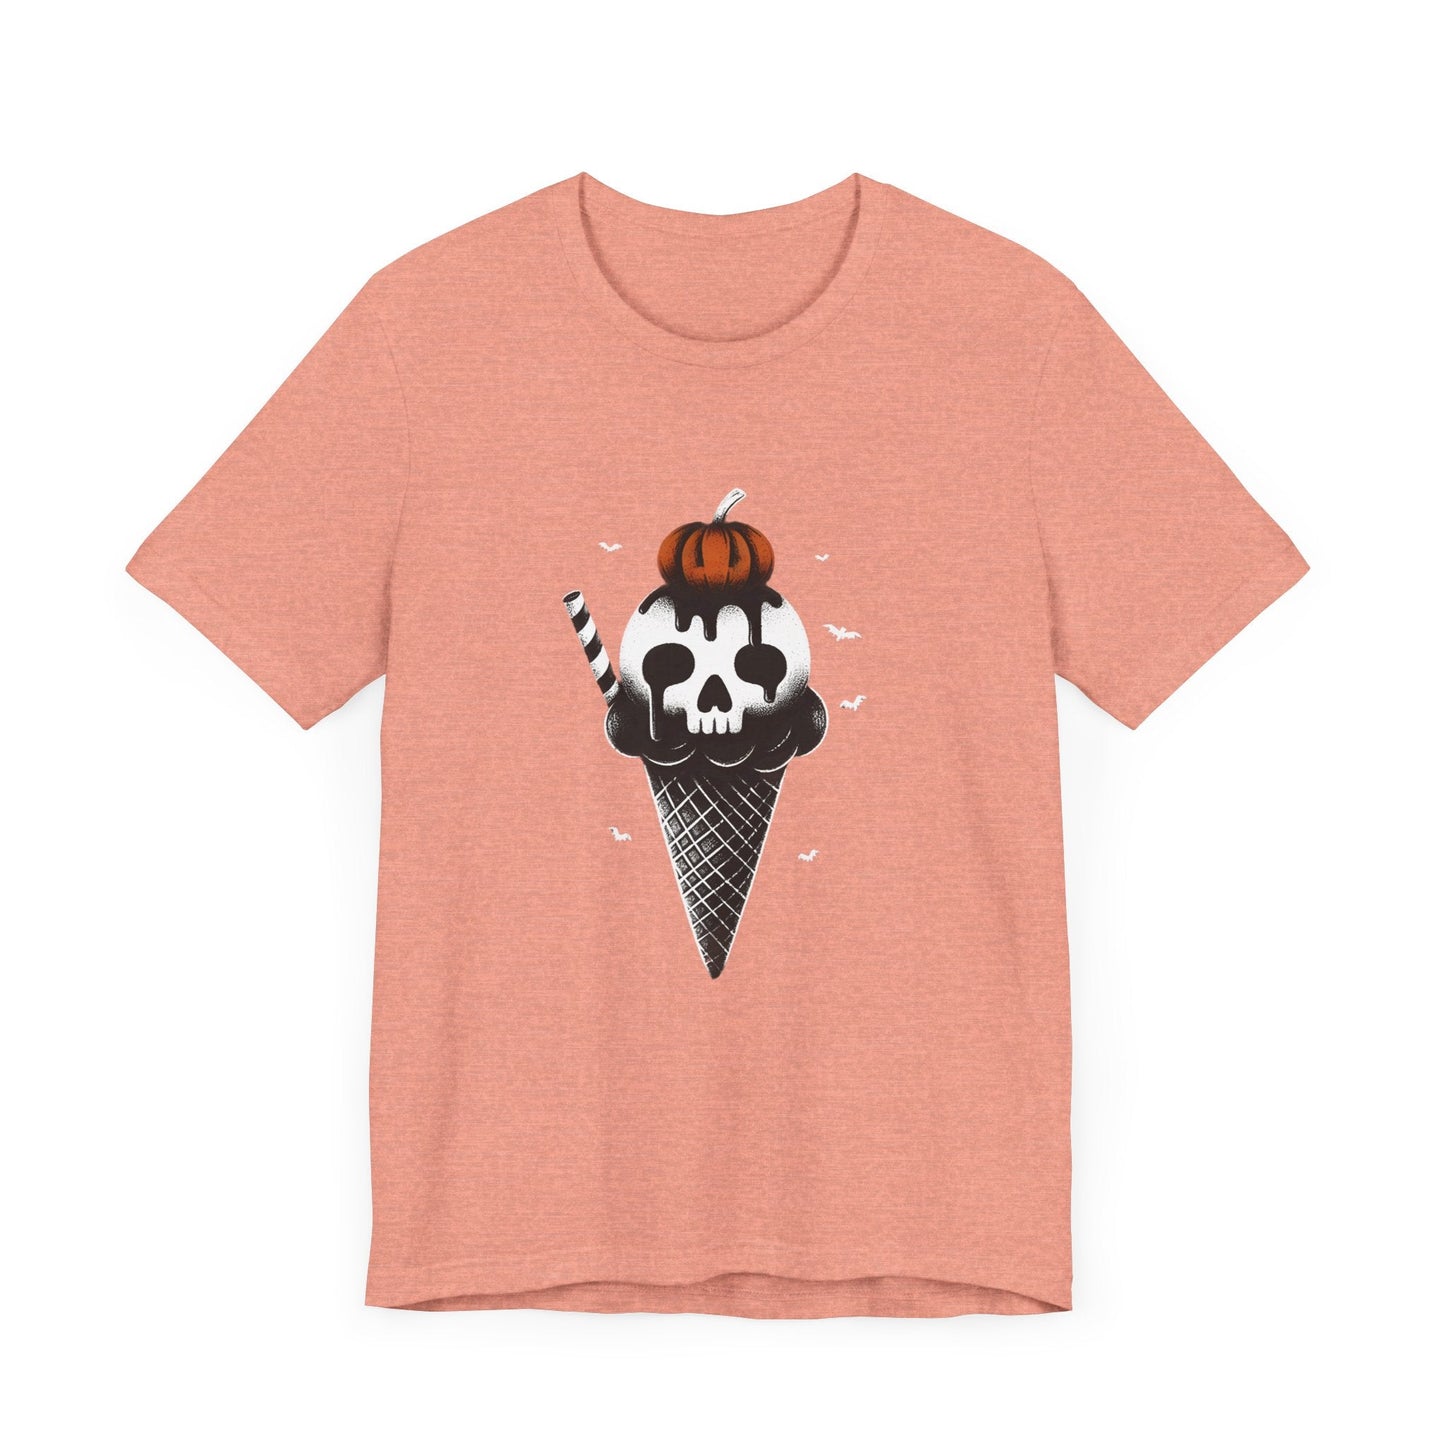 Spooky Ice Cream Cone Short Sleeve Tee ShirtT - ShirtVTZdesignsHeather SunsetXSclothingCottonCrew neck